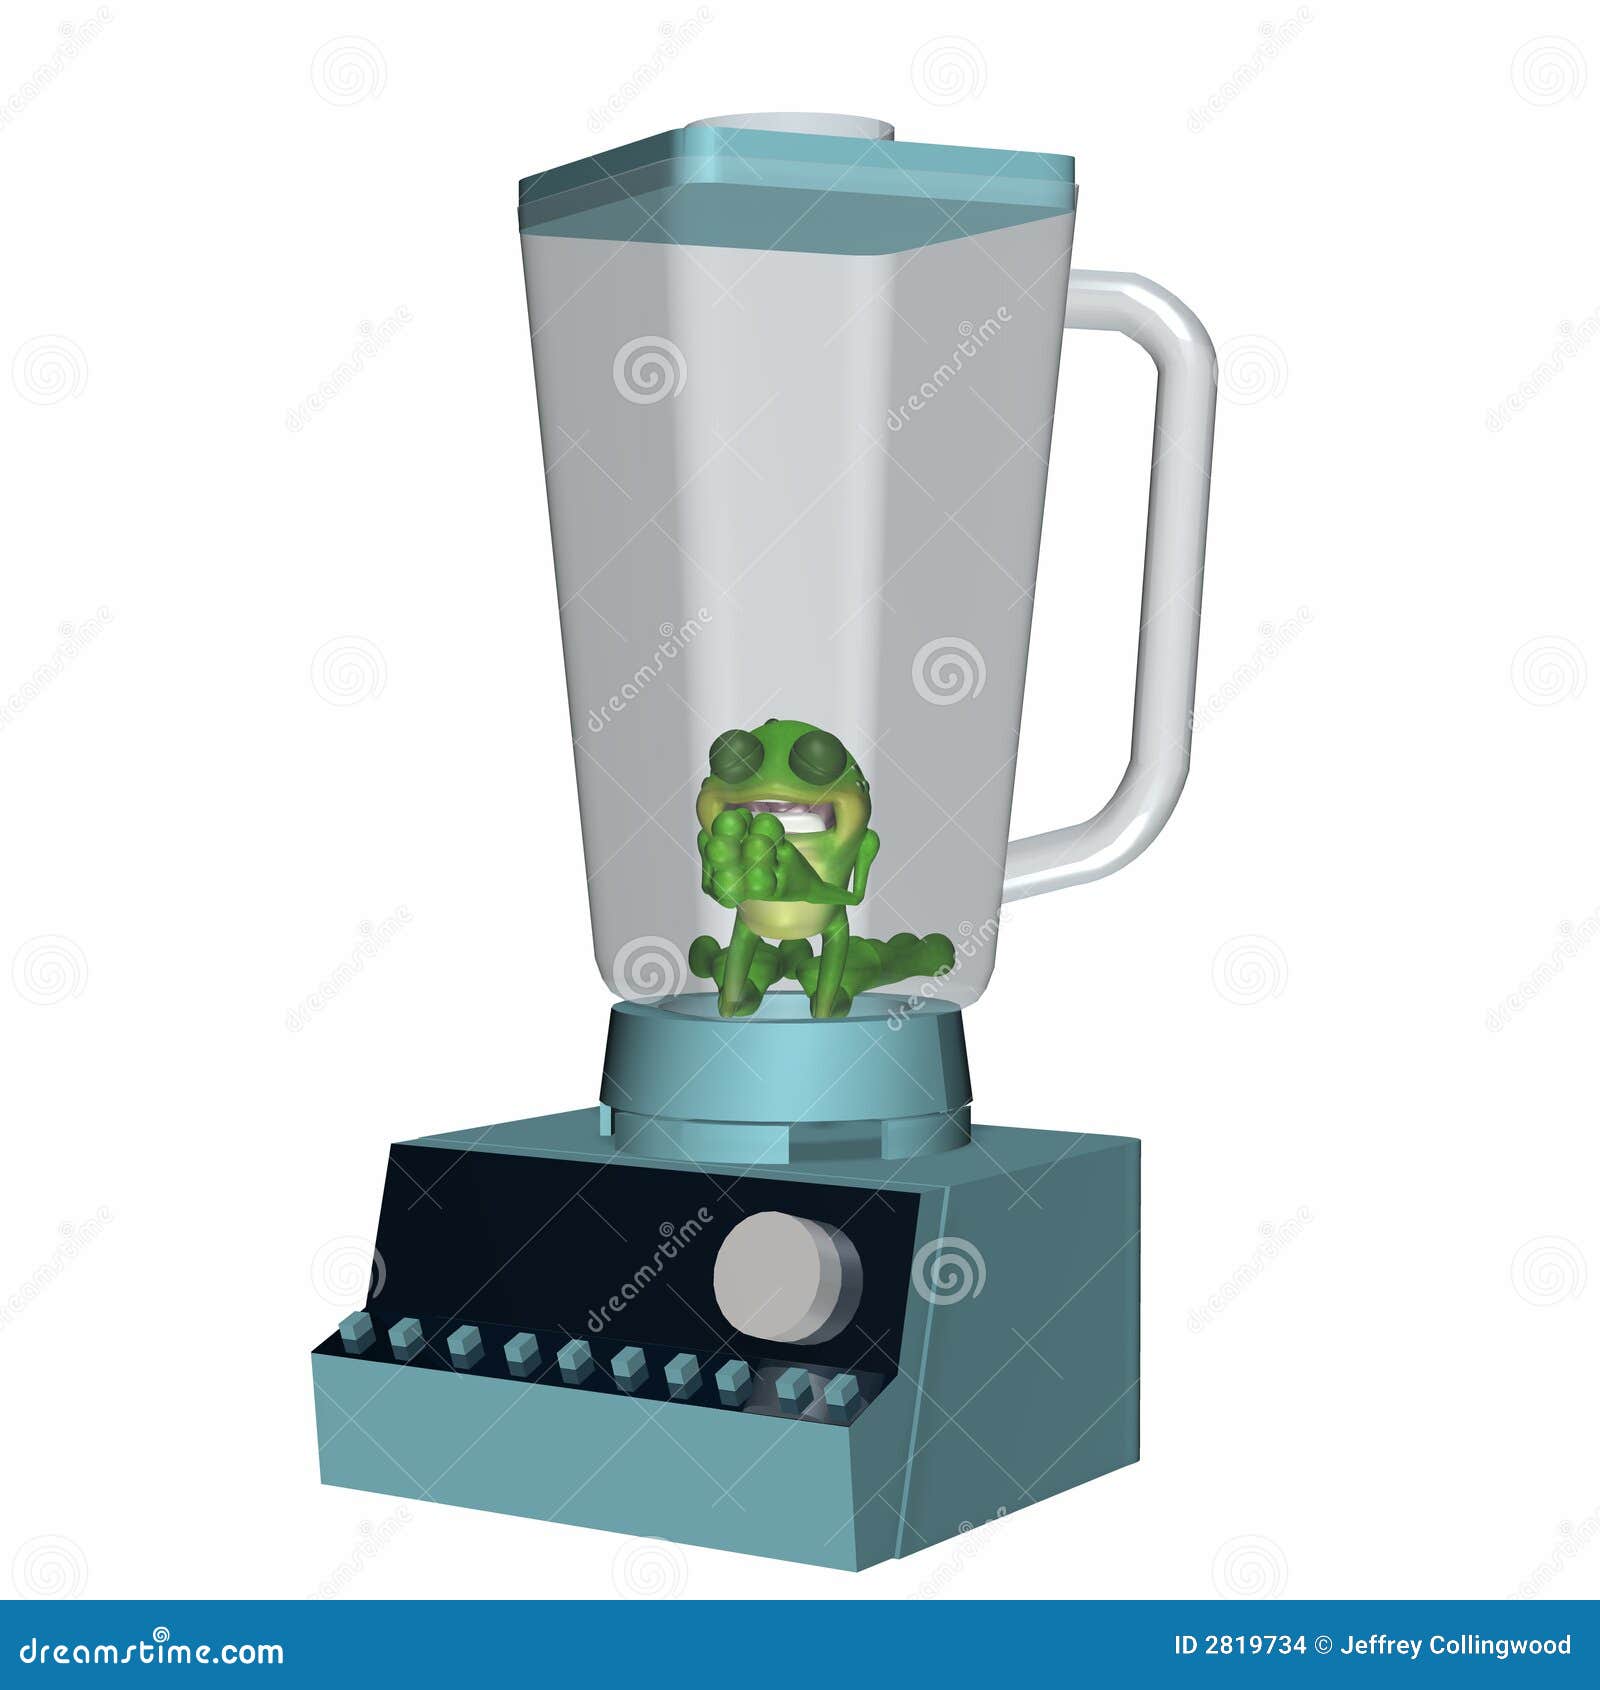 Frog In A Blender 3 Stock Images - Image: 2819734